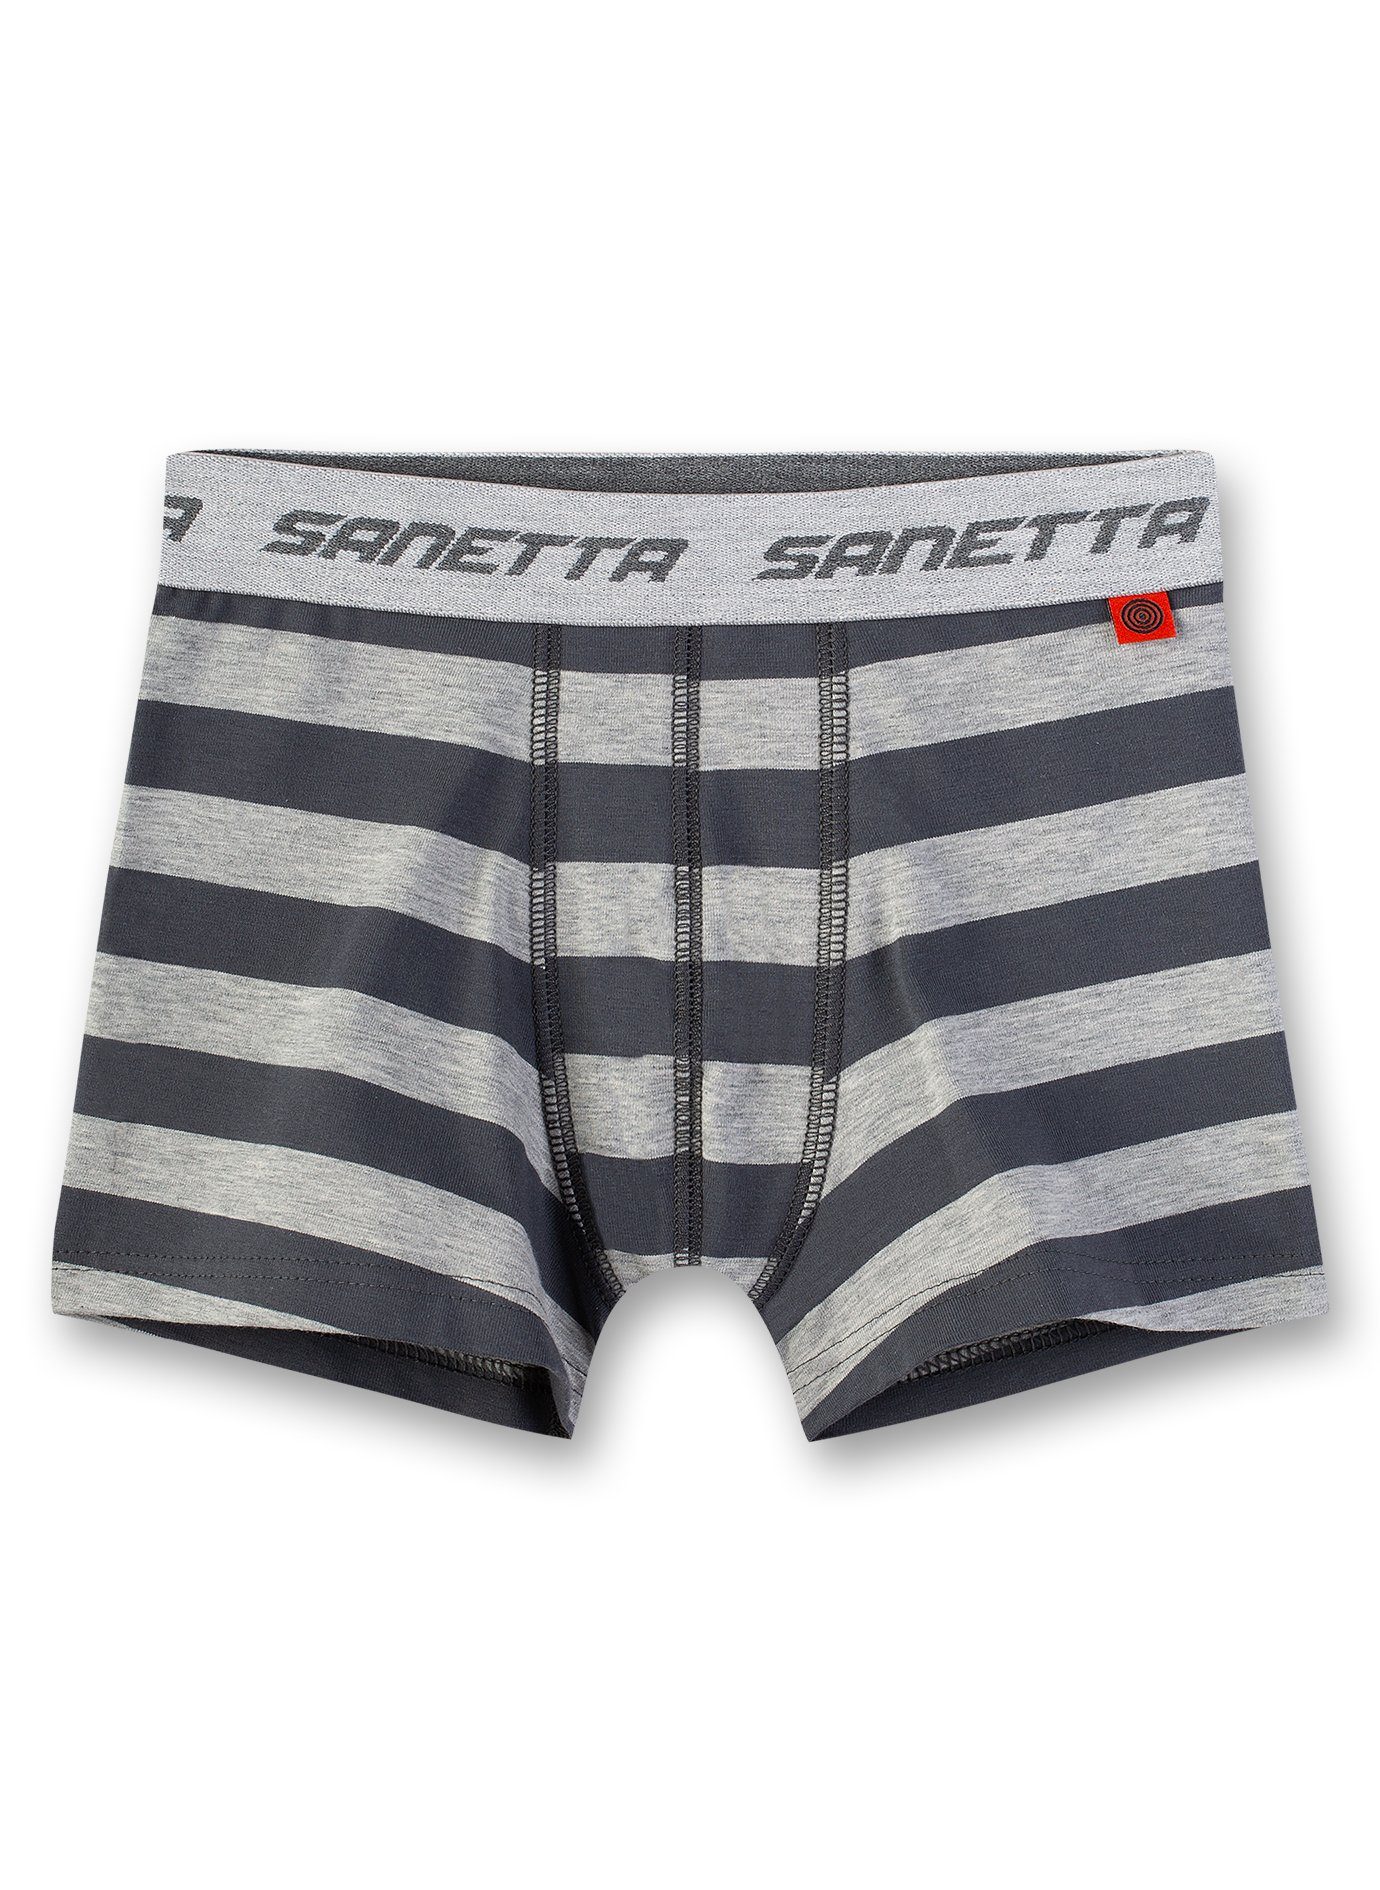 Sanetta Boxer Pants, grau Shorts - Jungen gestreift Unterhose